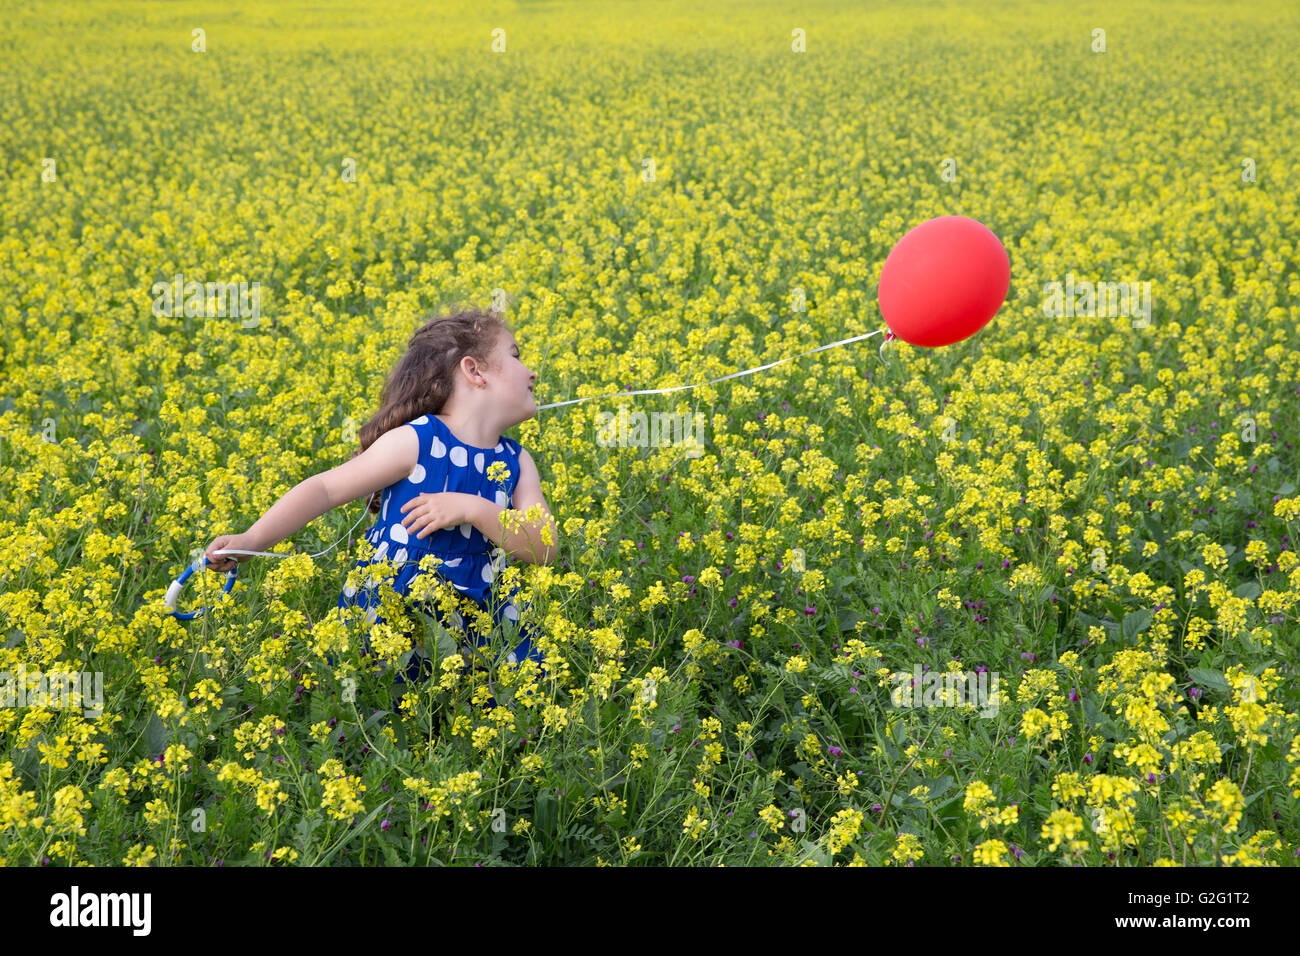 Kleines Mädchen im blauen Kleid mit roten fliegenden Ballon in gelben Blumen Feld spielen Stockfoto